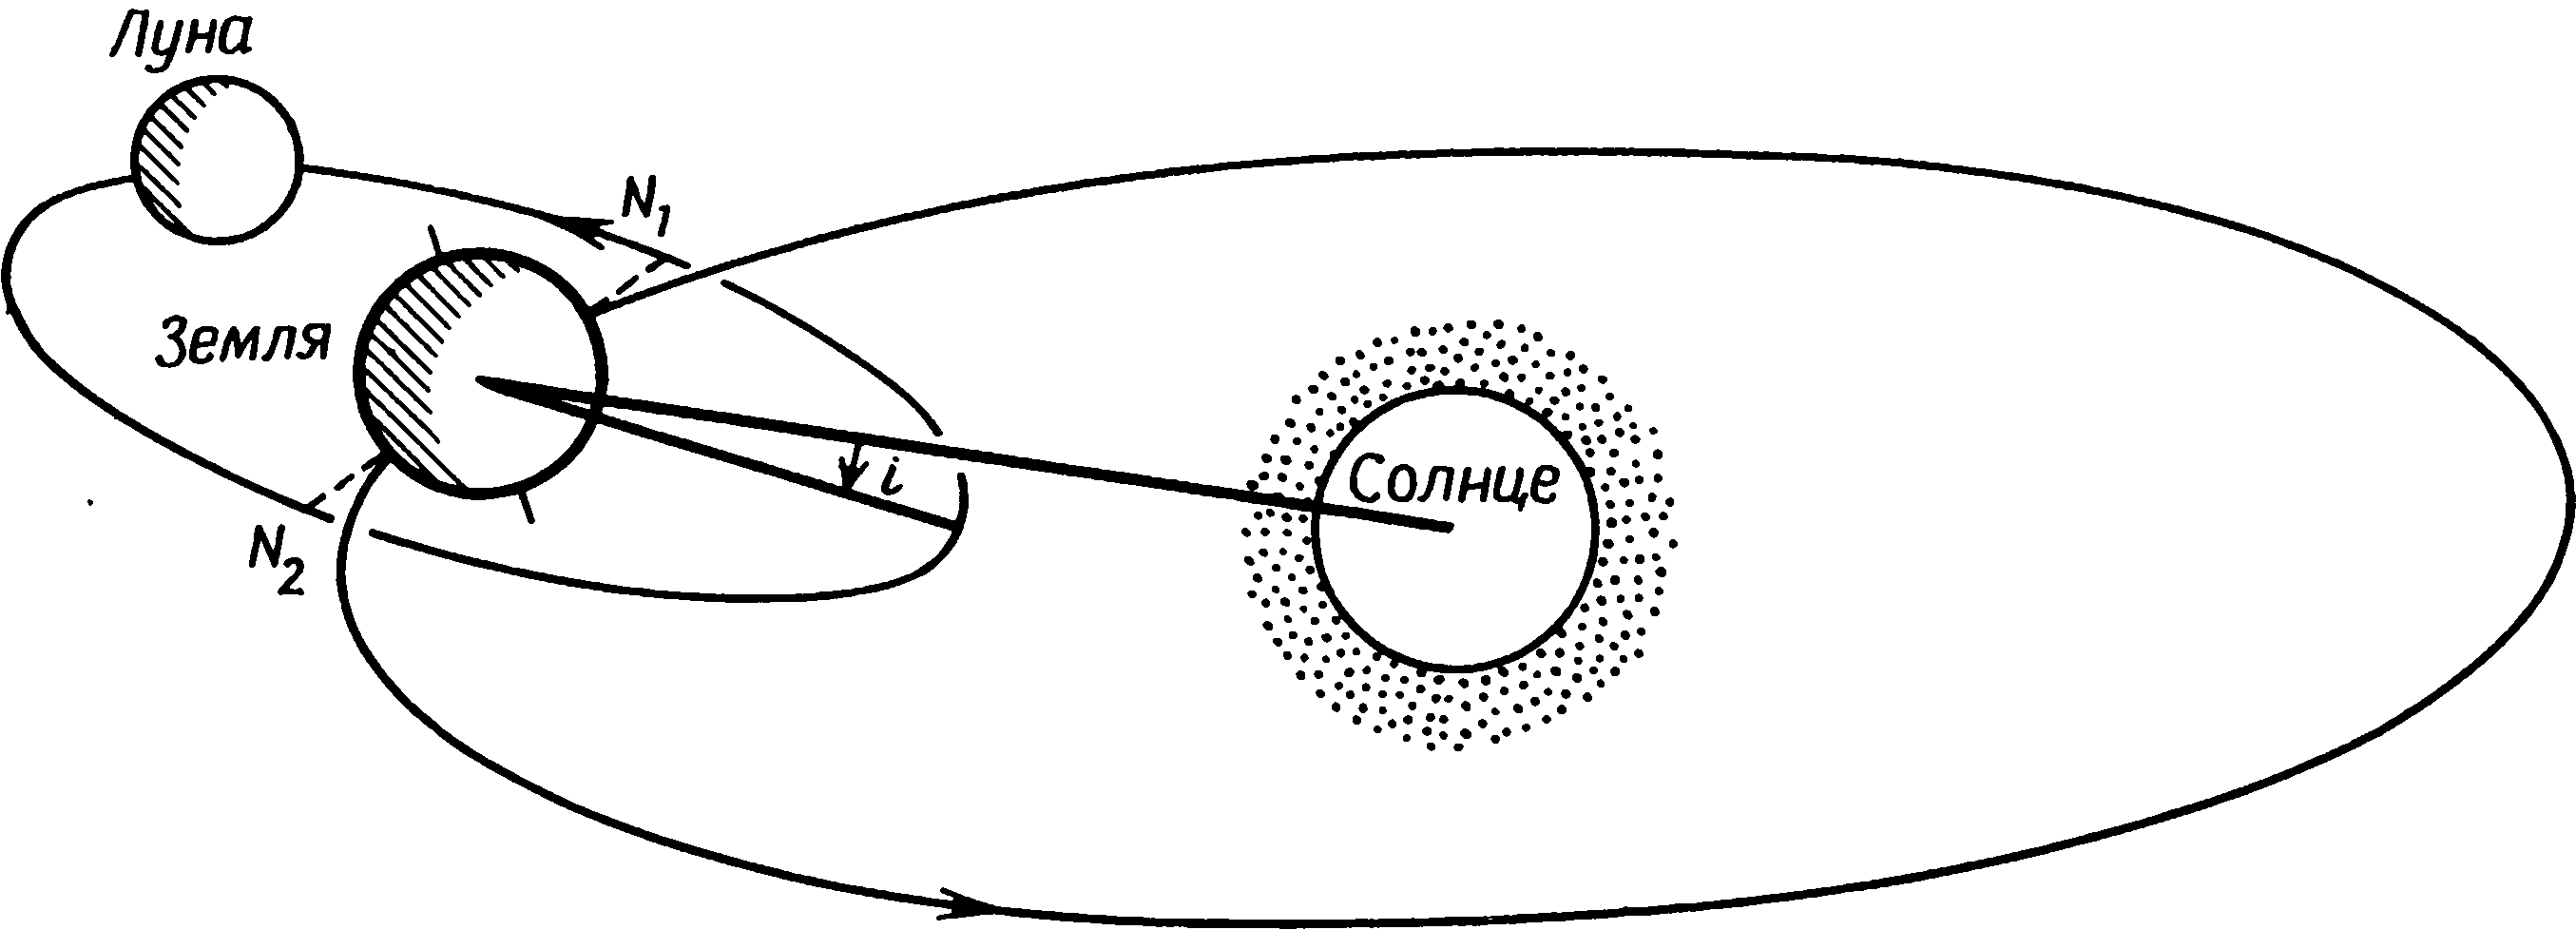 Рис. 4.9. Орбита Луны в пространстве через девять лет после изображенной на рис. 4.7 (масштаб не выдержан)